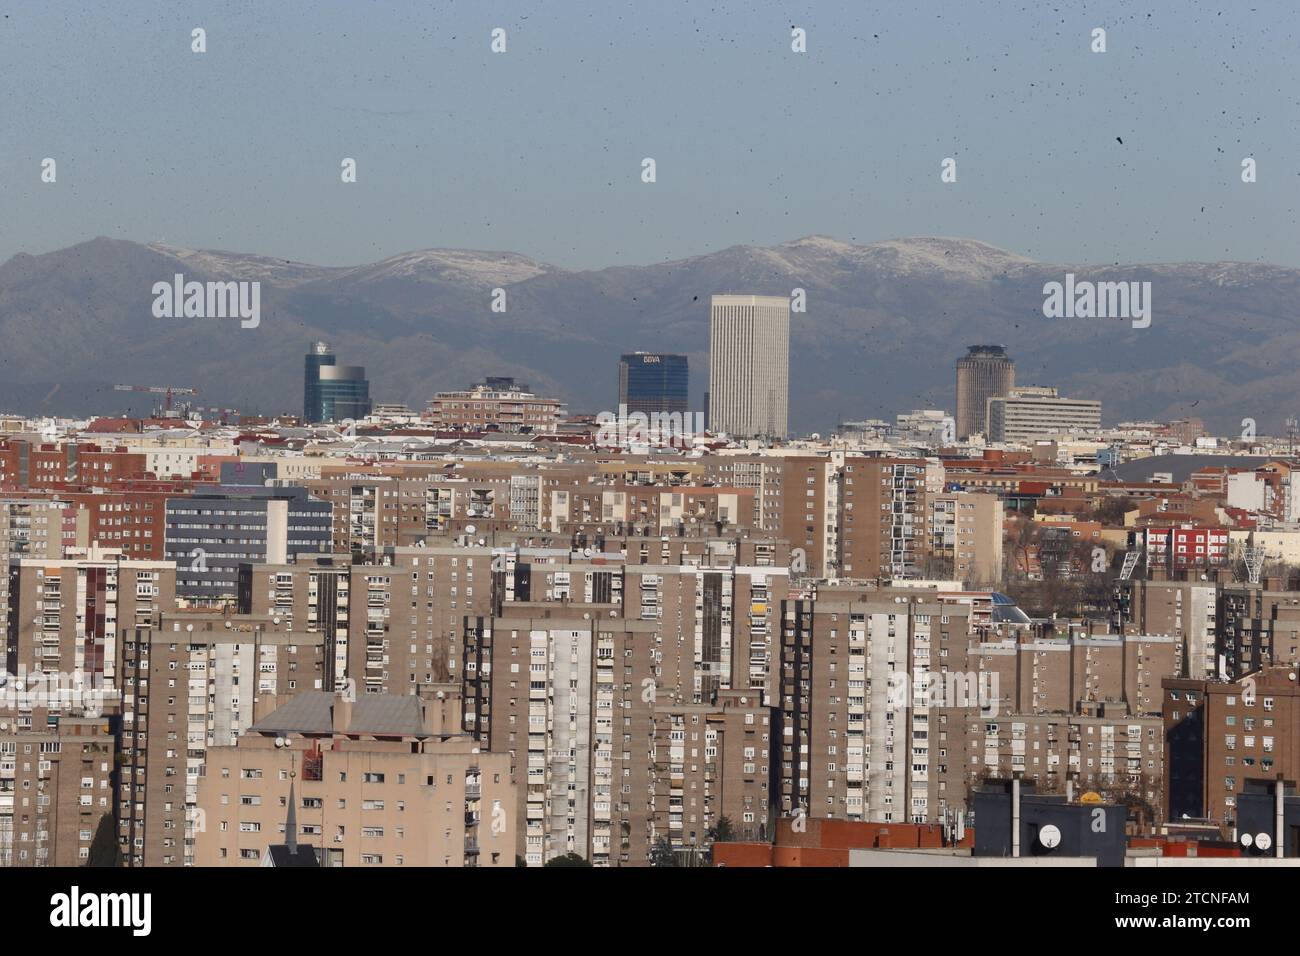 Madrid, 01.09.2017. Geringe Verschmutzung heute in Madrid. Foto: Jaime García ARCHDC. Quelle: Album / Archivo ABC / Jaime García Stockfoto